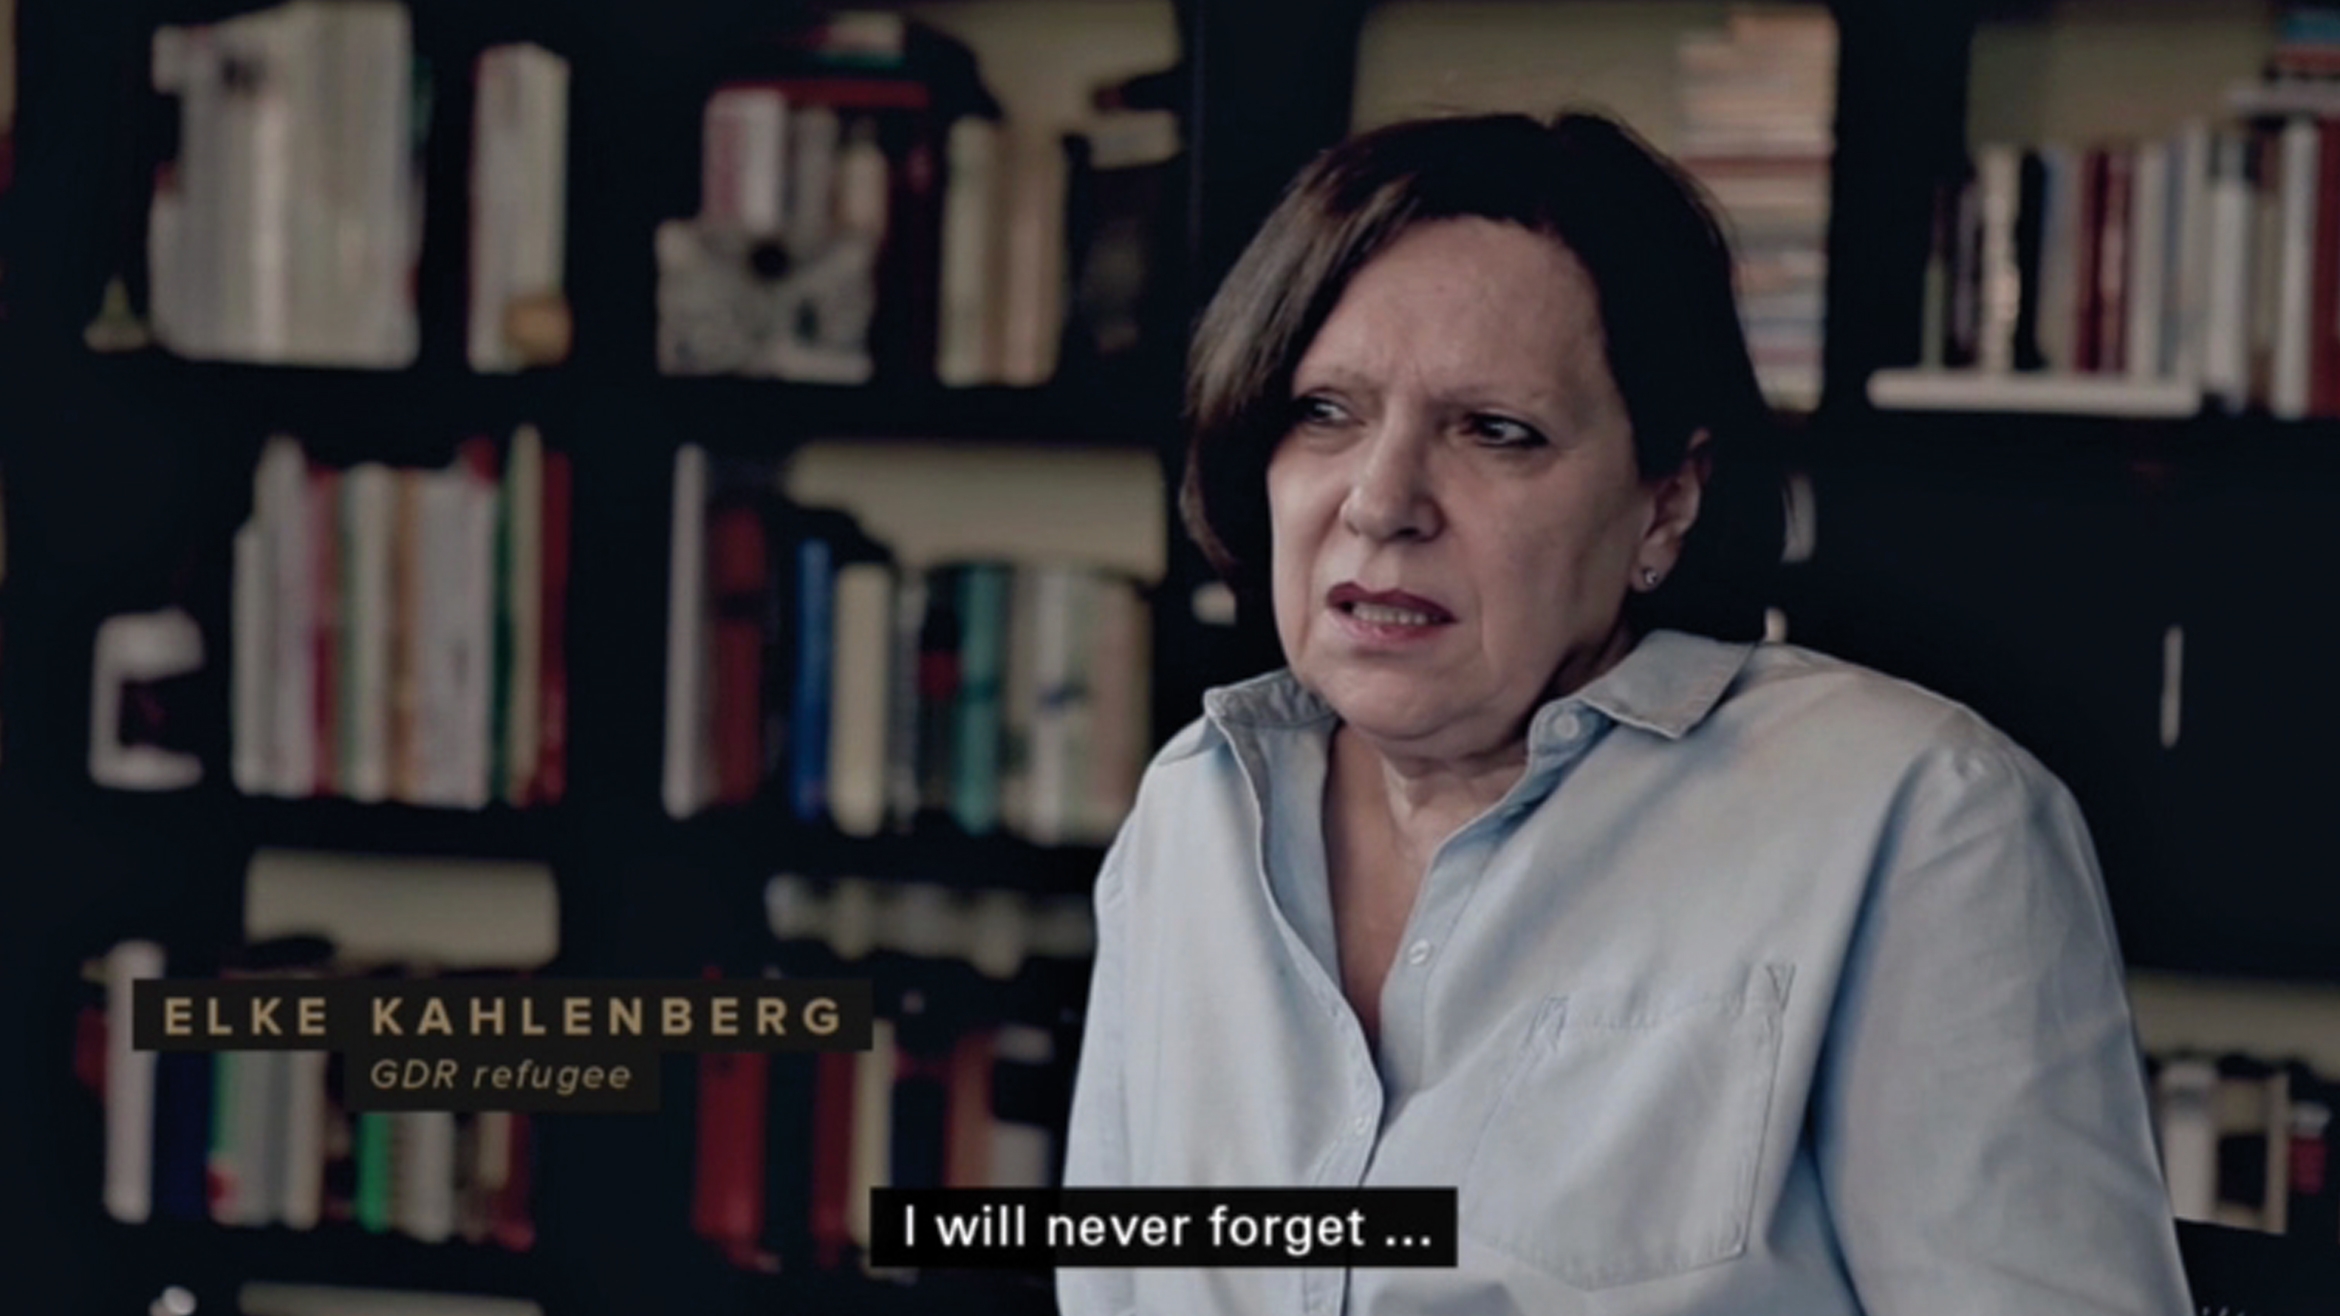 Elke Kahlenberg erinnerte sich im Casefilm an ihre Flucht aus der ehemaligen DDR –